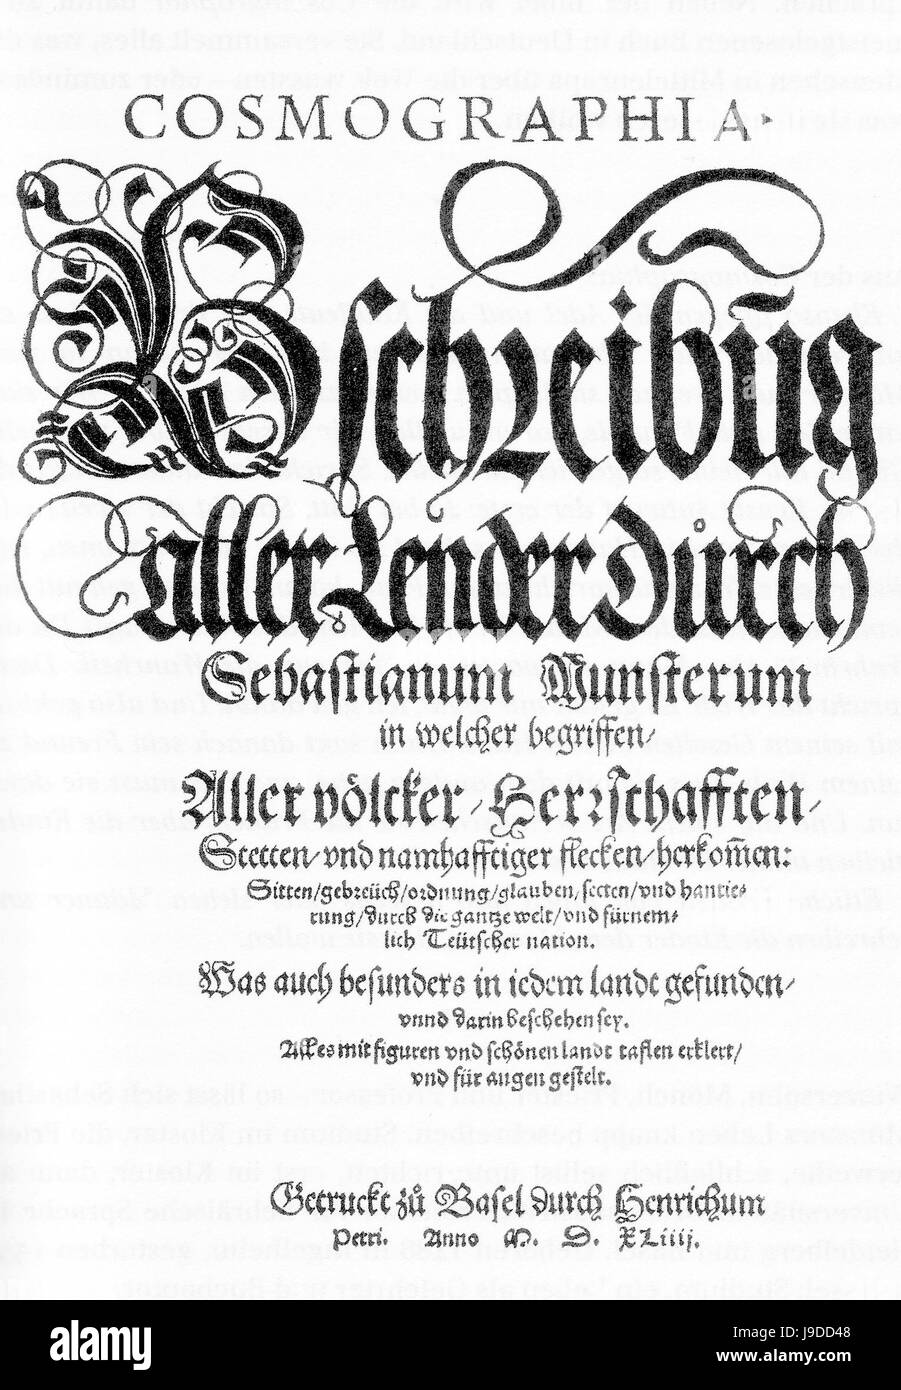 SEBASTIAN Münster (1488-1552). Cartographe allemand. Page de titre de son "Cosmographia" publié en 1544 Banque D'Images